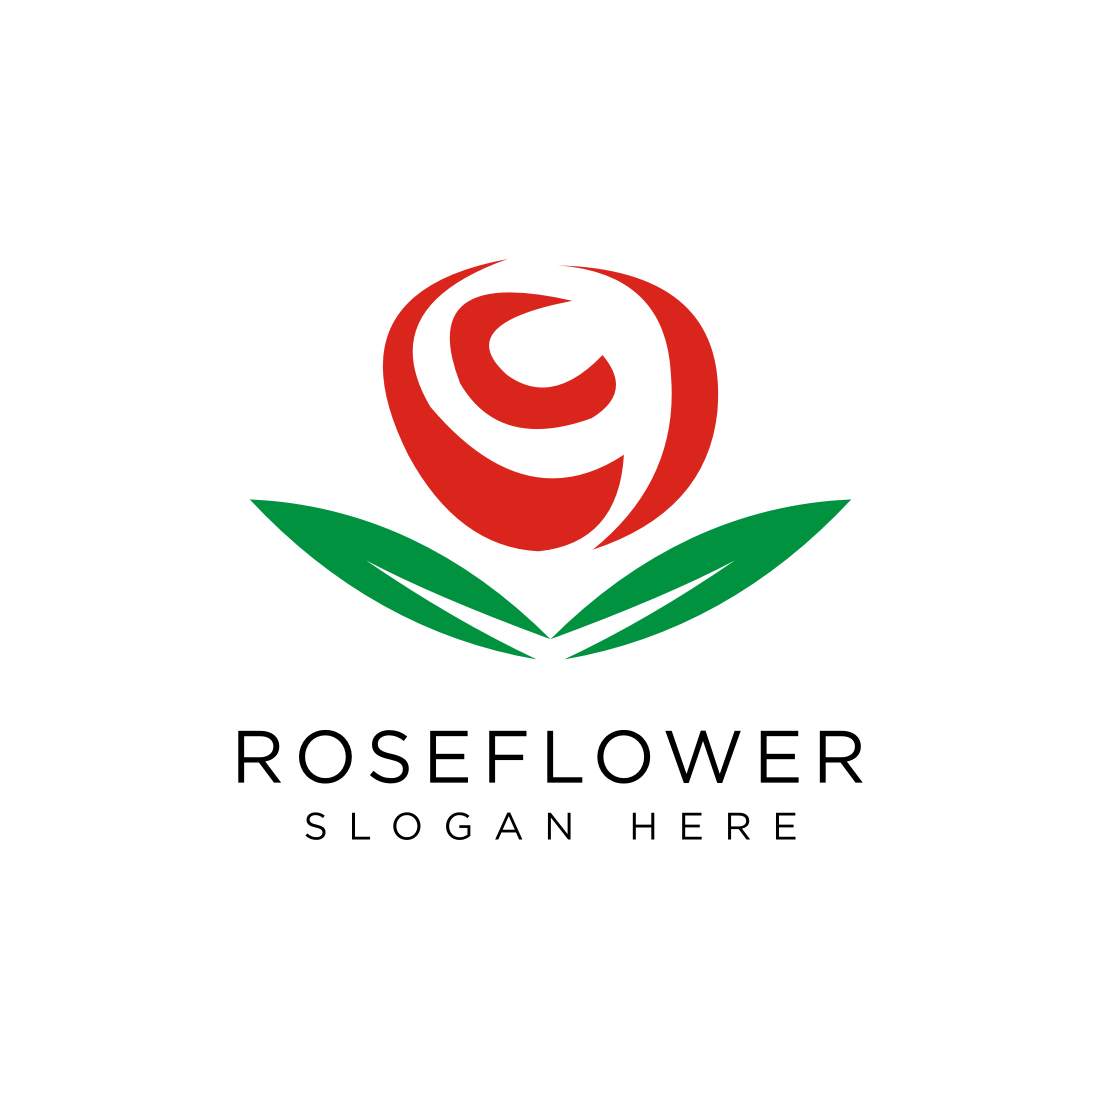 rose flower logo design vector cover image.